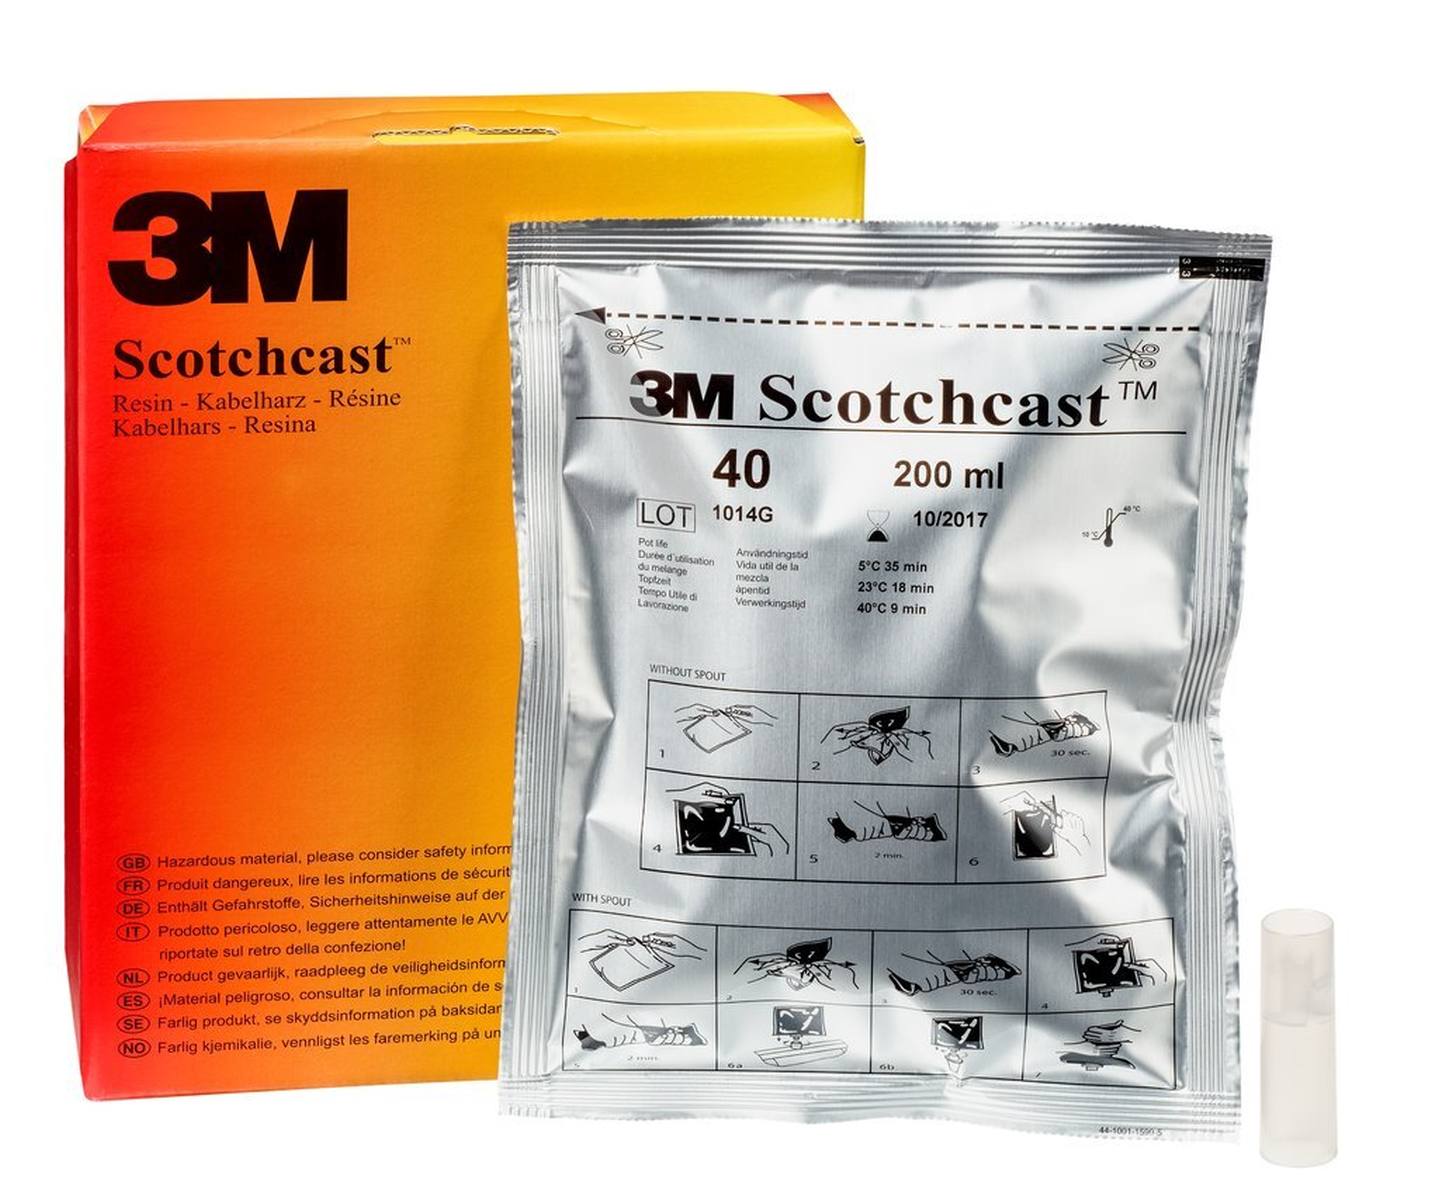 3M Scotchcast 40-B, resina de poliuretano para cables, sistema GMG de 2 componentes, tamaño B, 200 ml